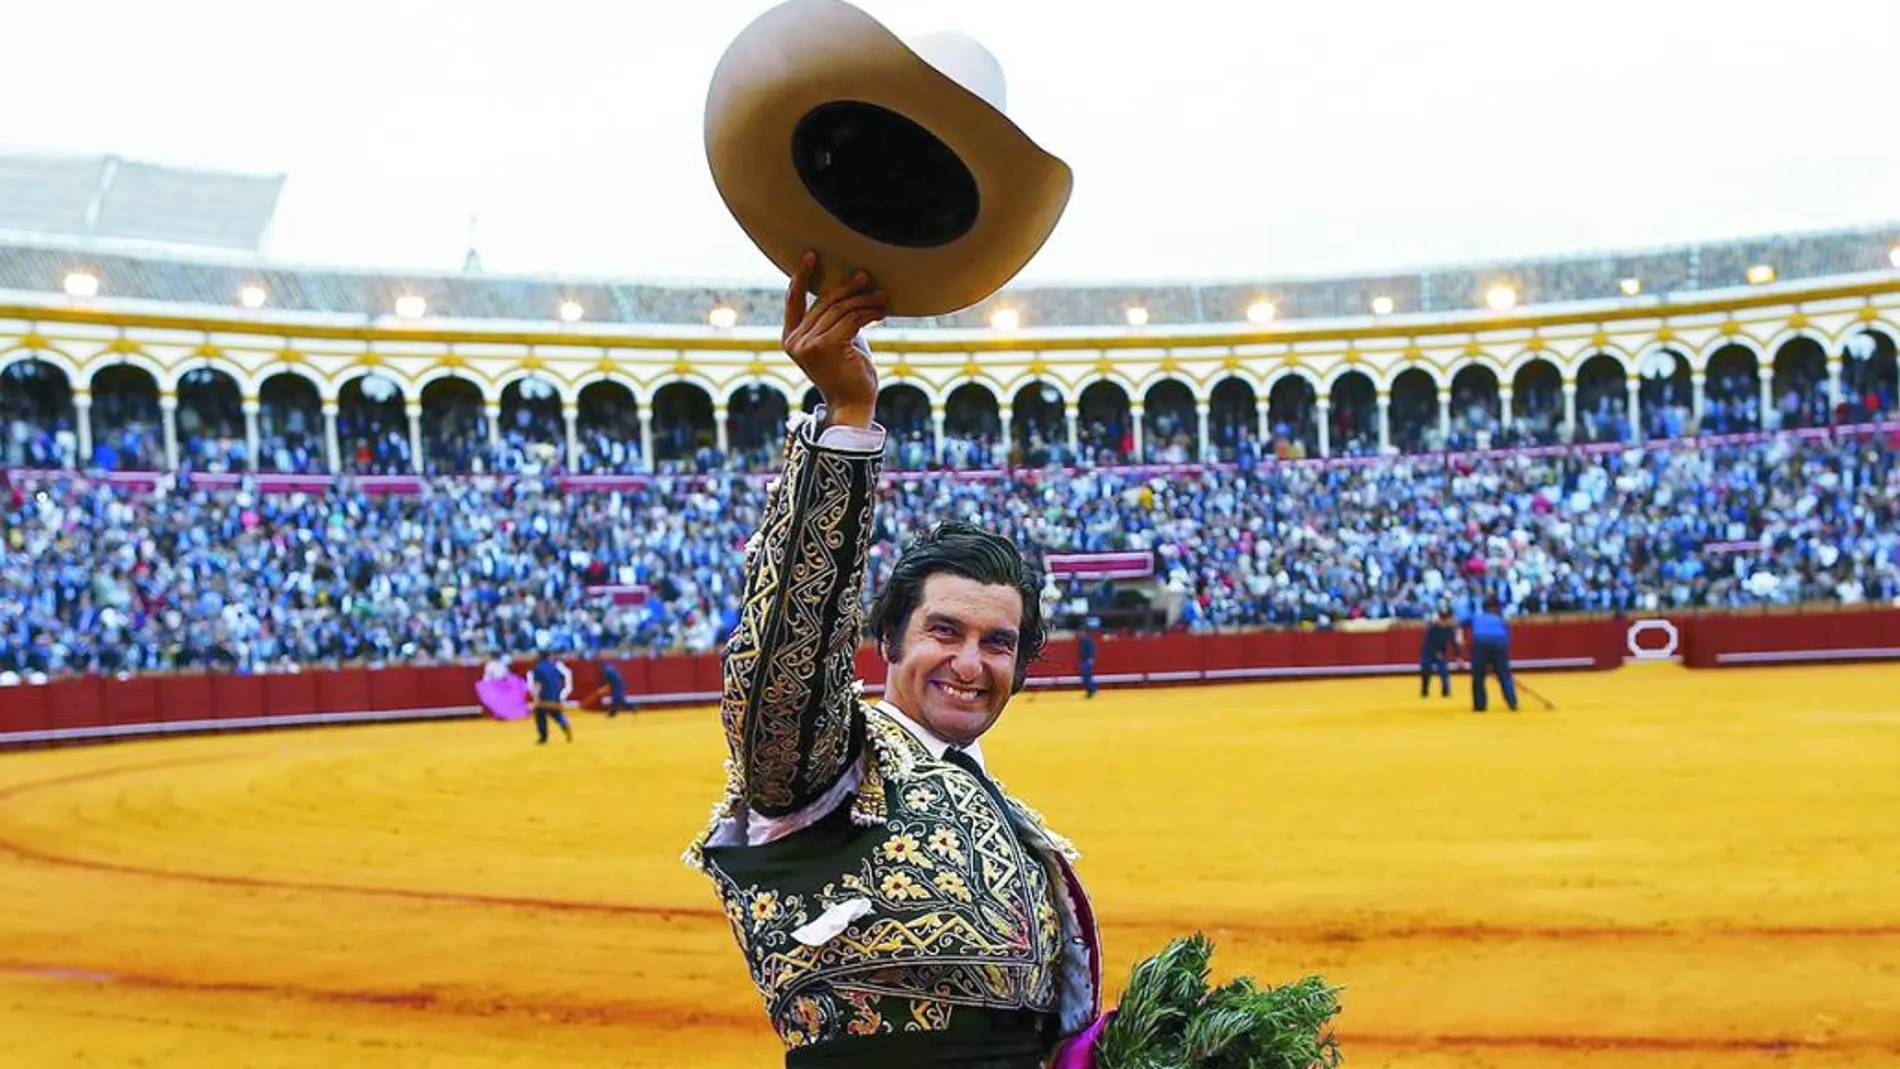 Morante de la Puebla, sonriente, celebra su triunfal actuación durante la vuelta al ruedo en La Maestranza